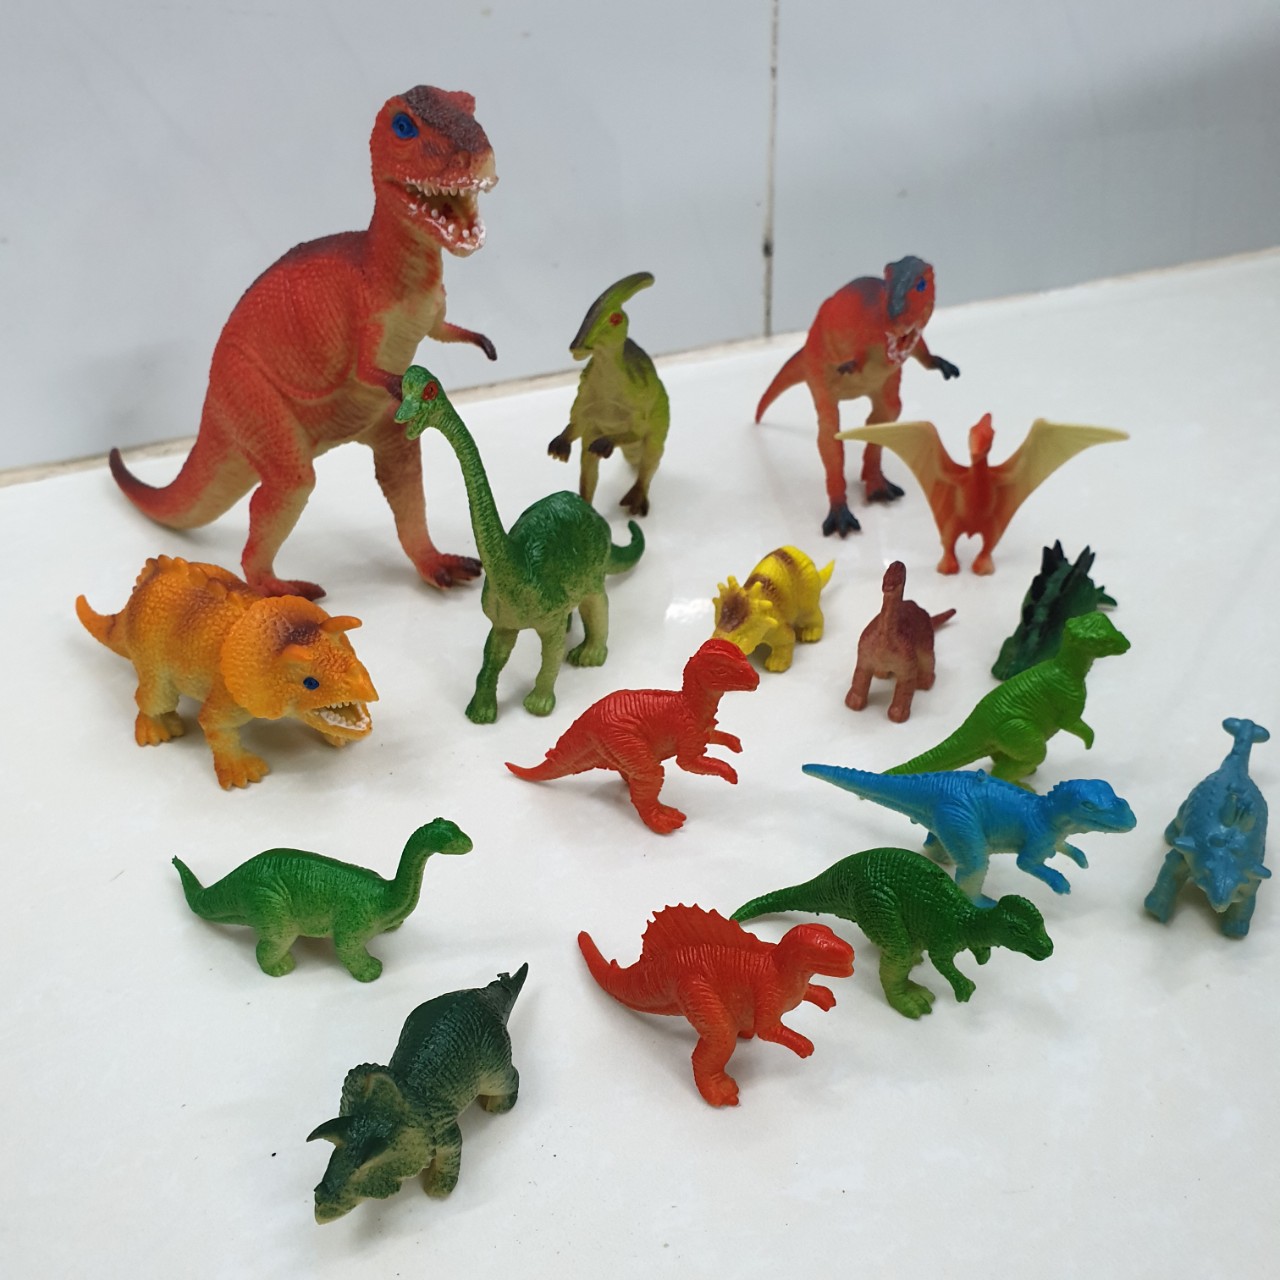 Bộ 16 mô hình khủng long kỉ Jurassic World Dinosaurs dành cho bé 5 tuổi trở lên làm đồ chơi, kích thích trí tò mò, tăng khả năng ghi nhớ và học hỏi về thế giới khủng long